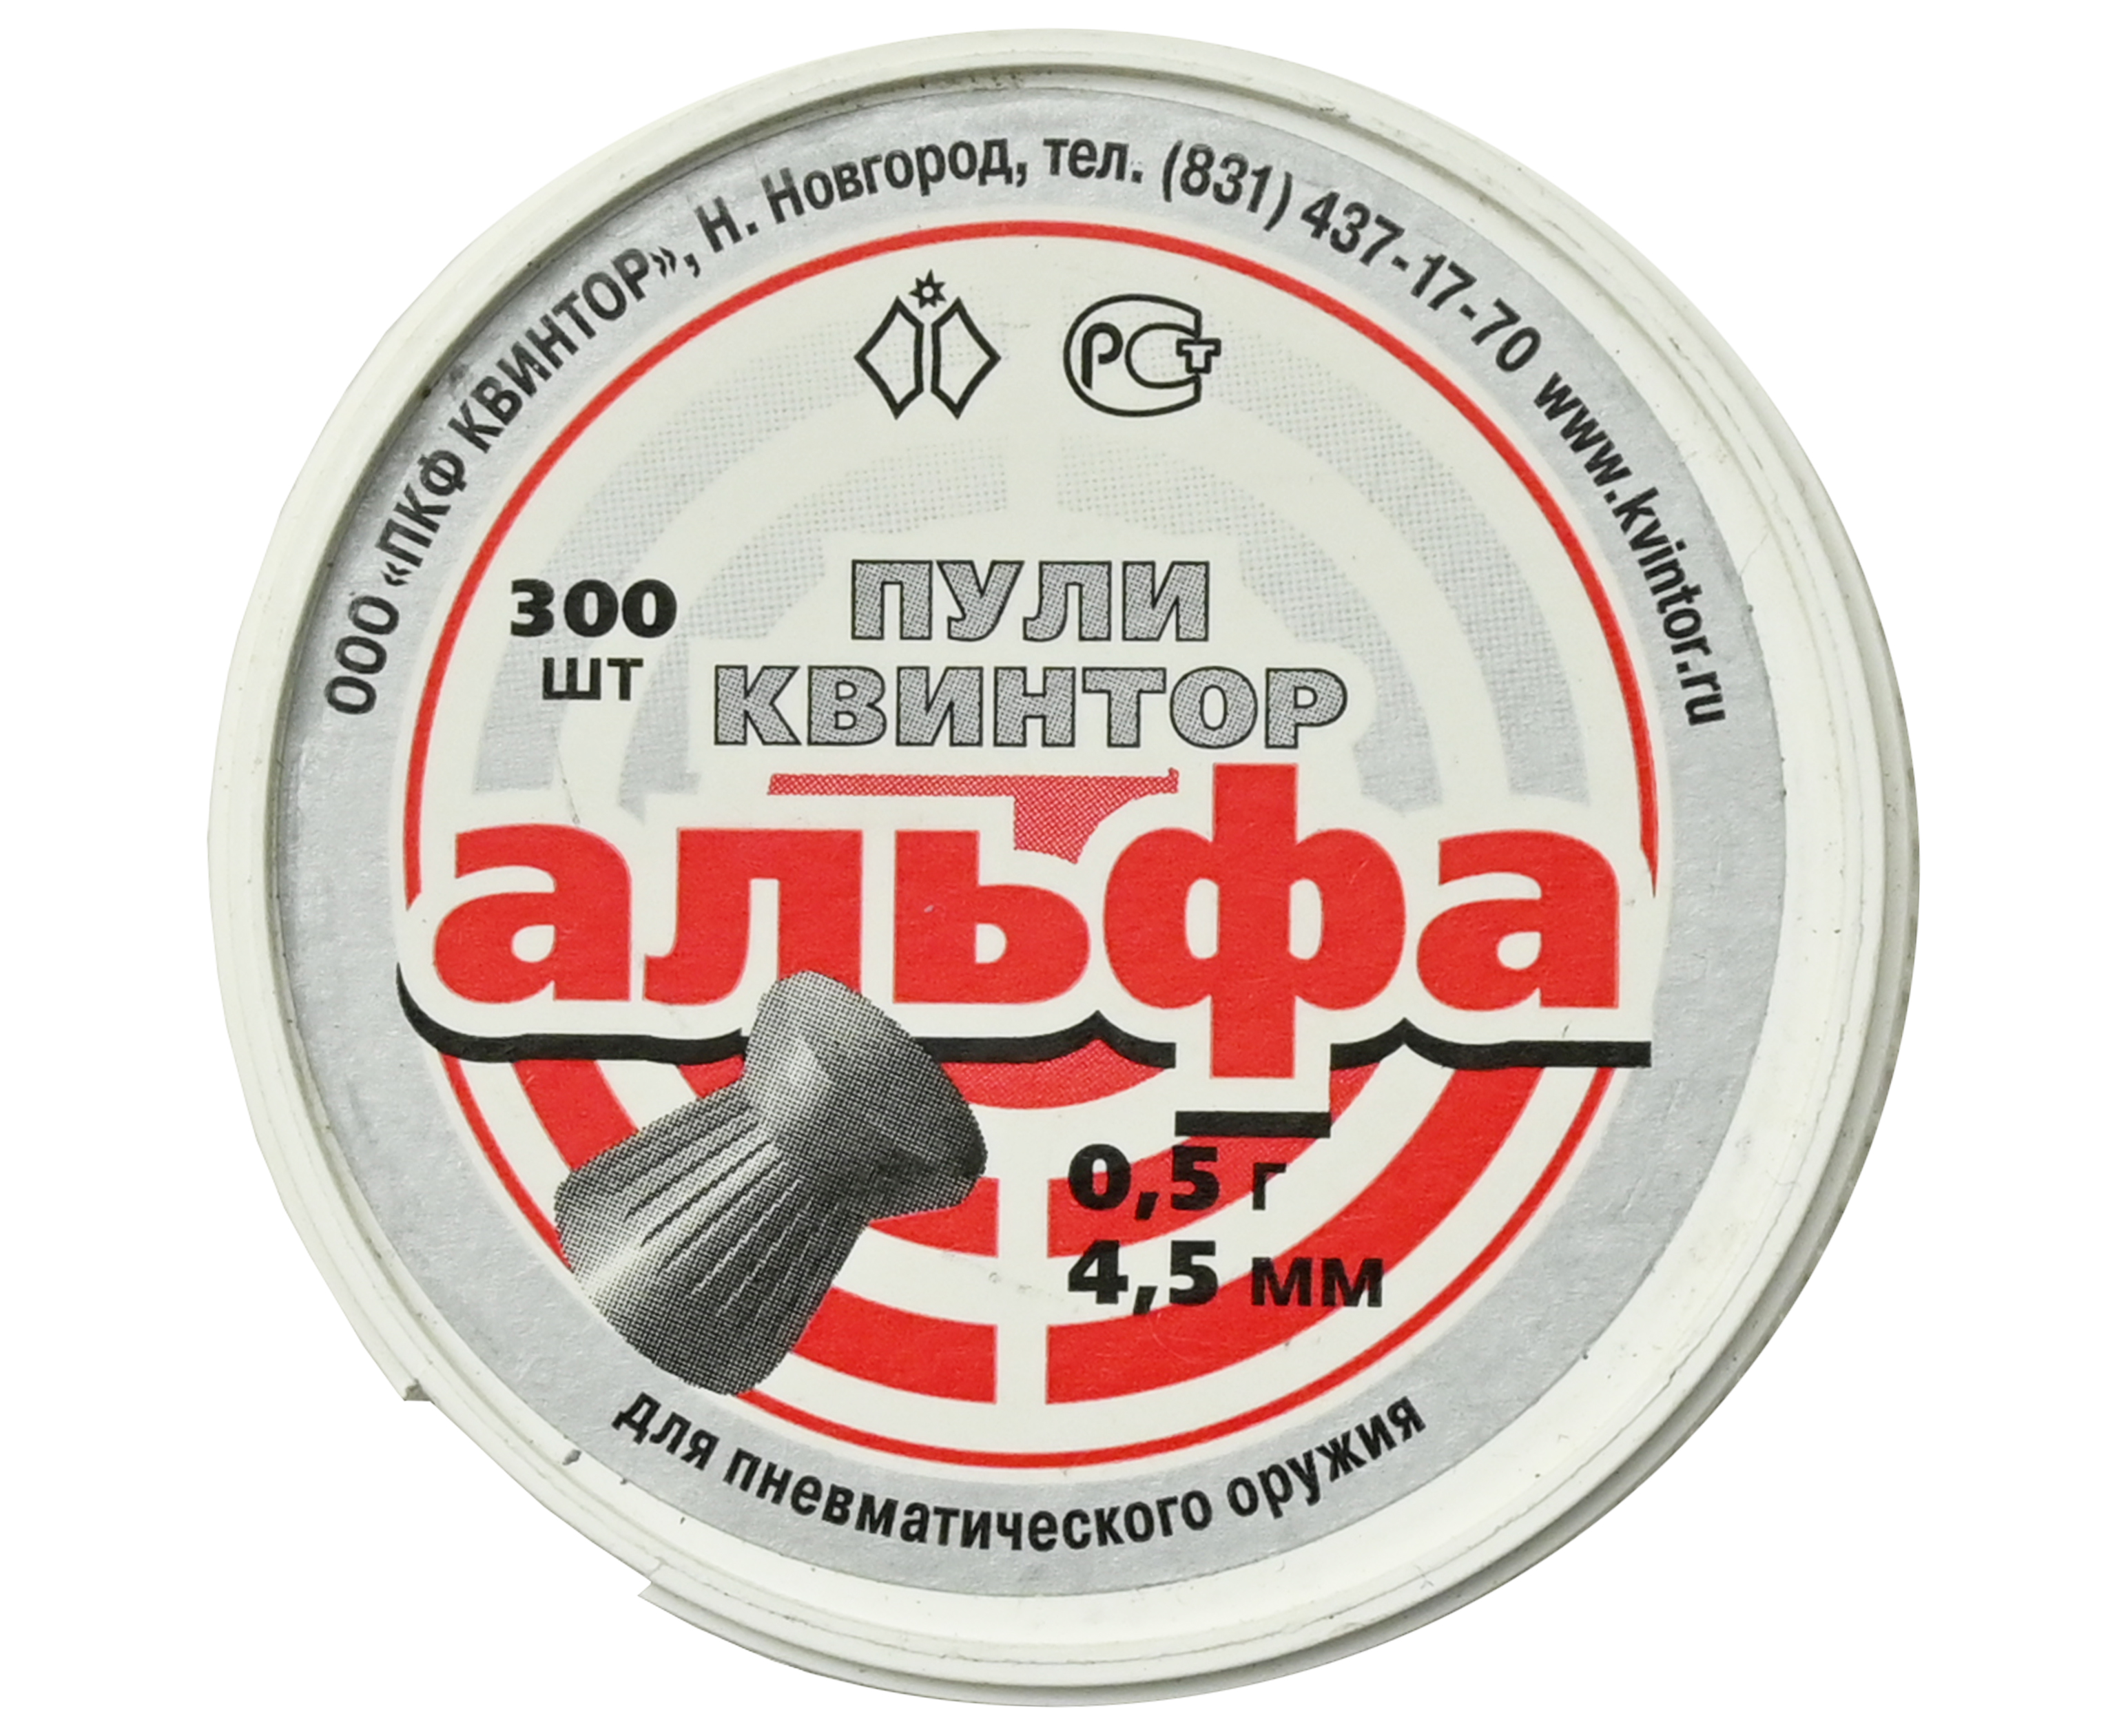 Пули пневматические Квинтор Альфа 4.5 мм (300 шт, 0.50 грамм)